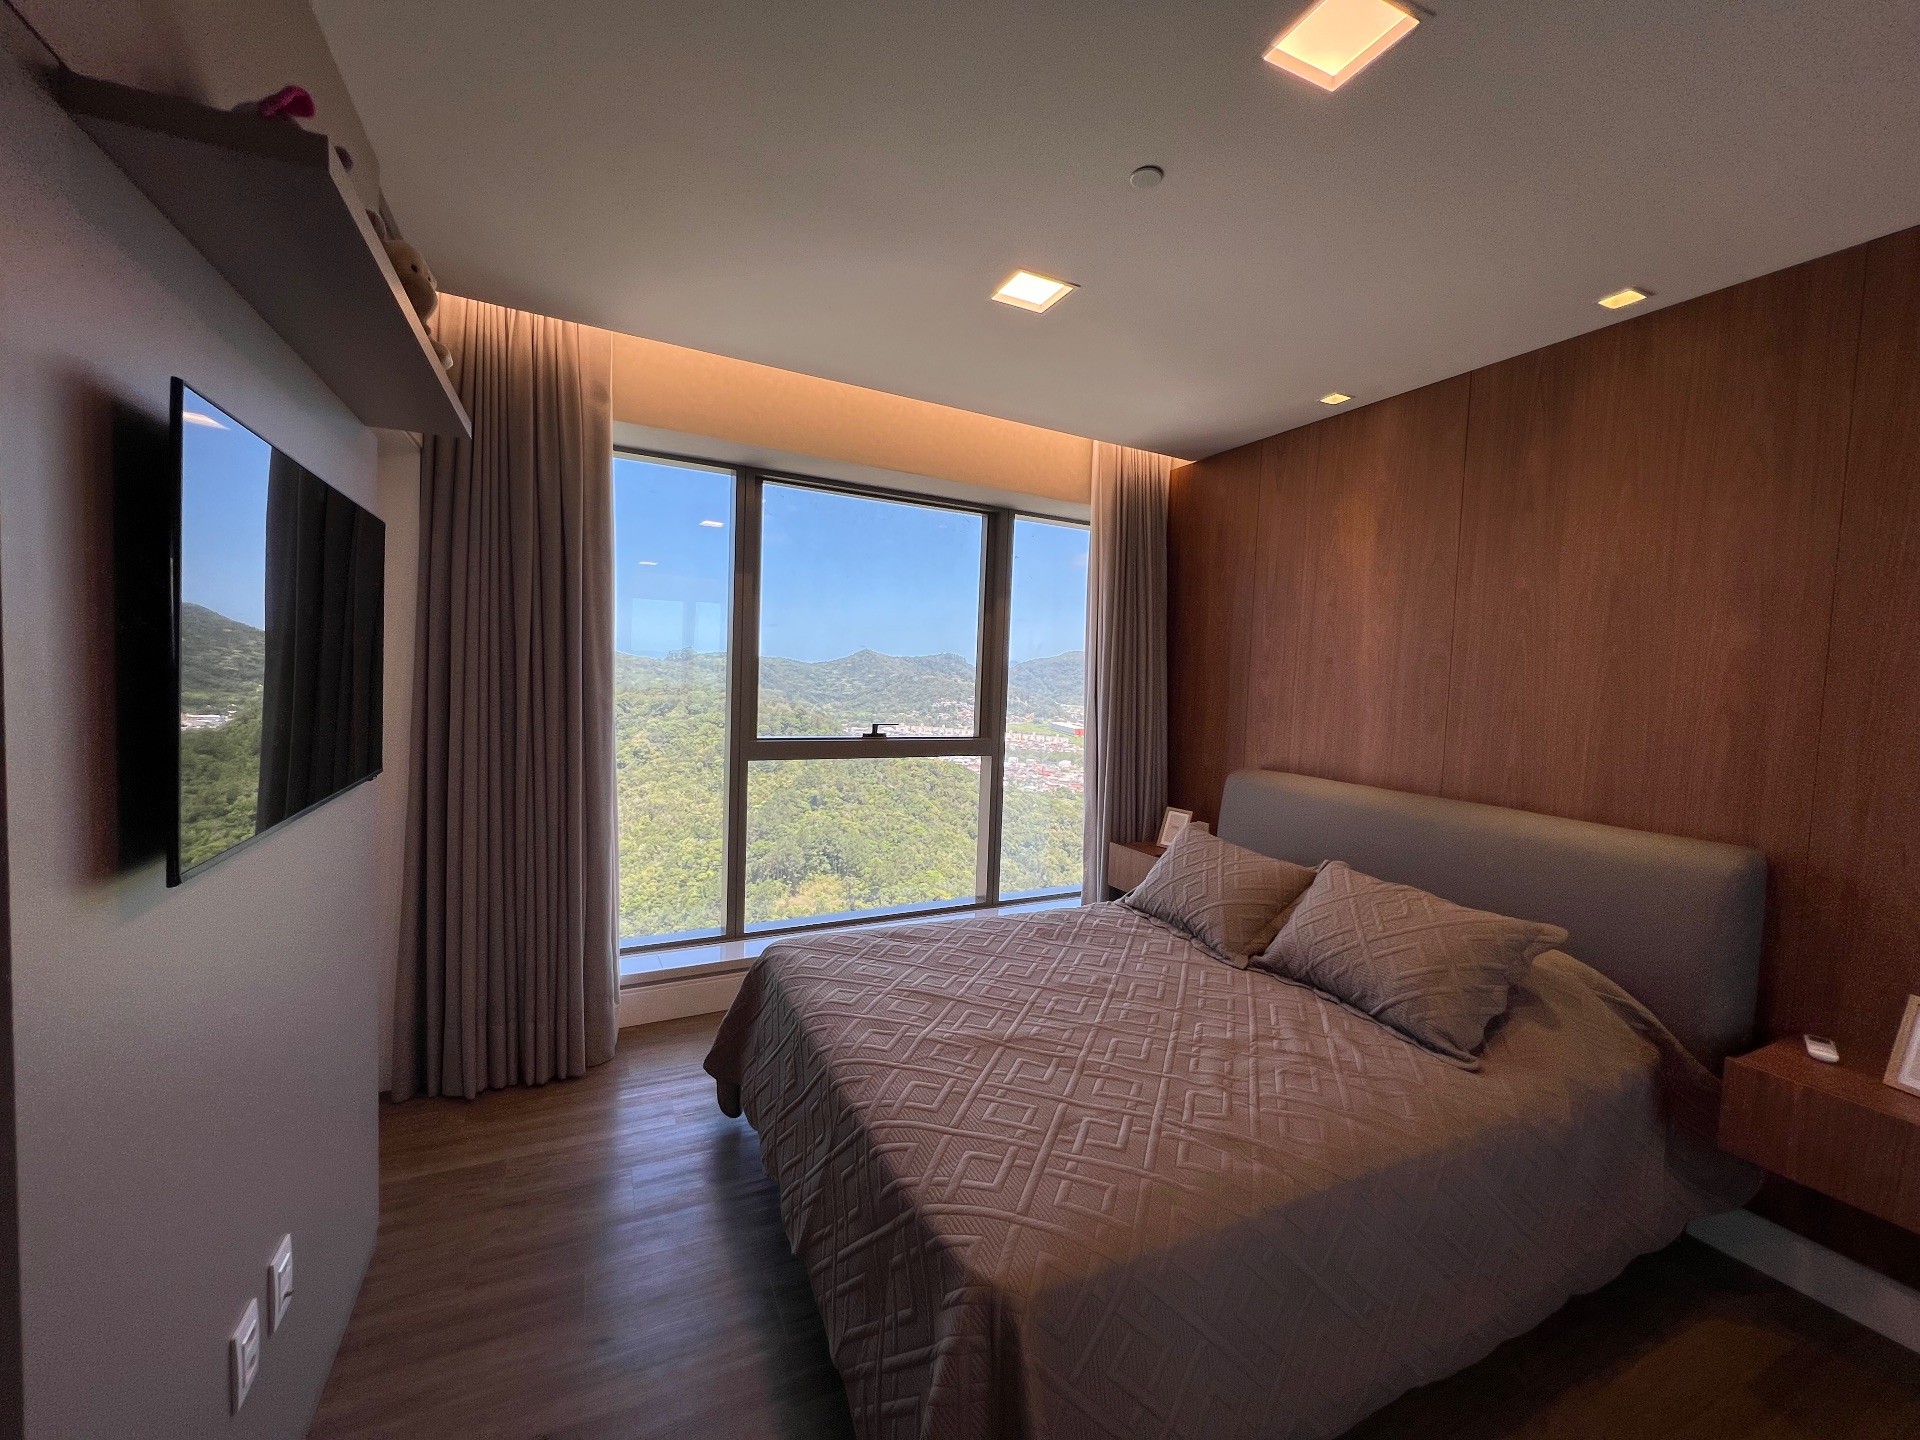 YACHTHOUSE, Apartamento finamente, mobiliado, equipado e decorado, andar alto torre 2, localizado na Barra Sul em Balneário Camboriú 